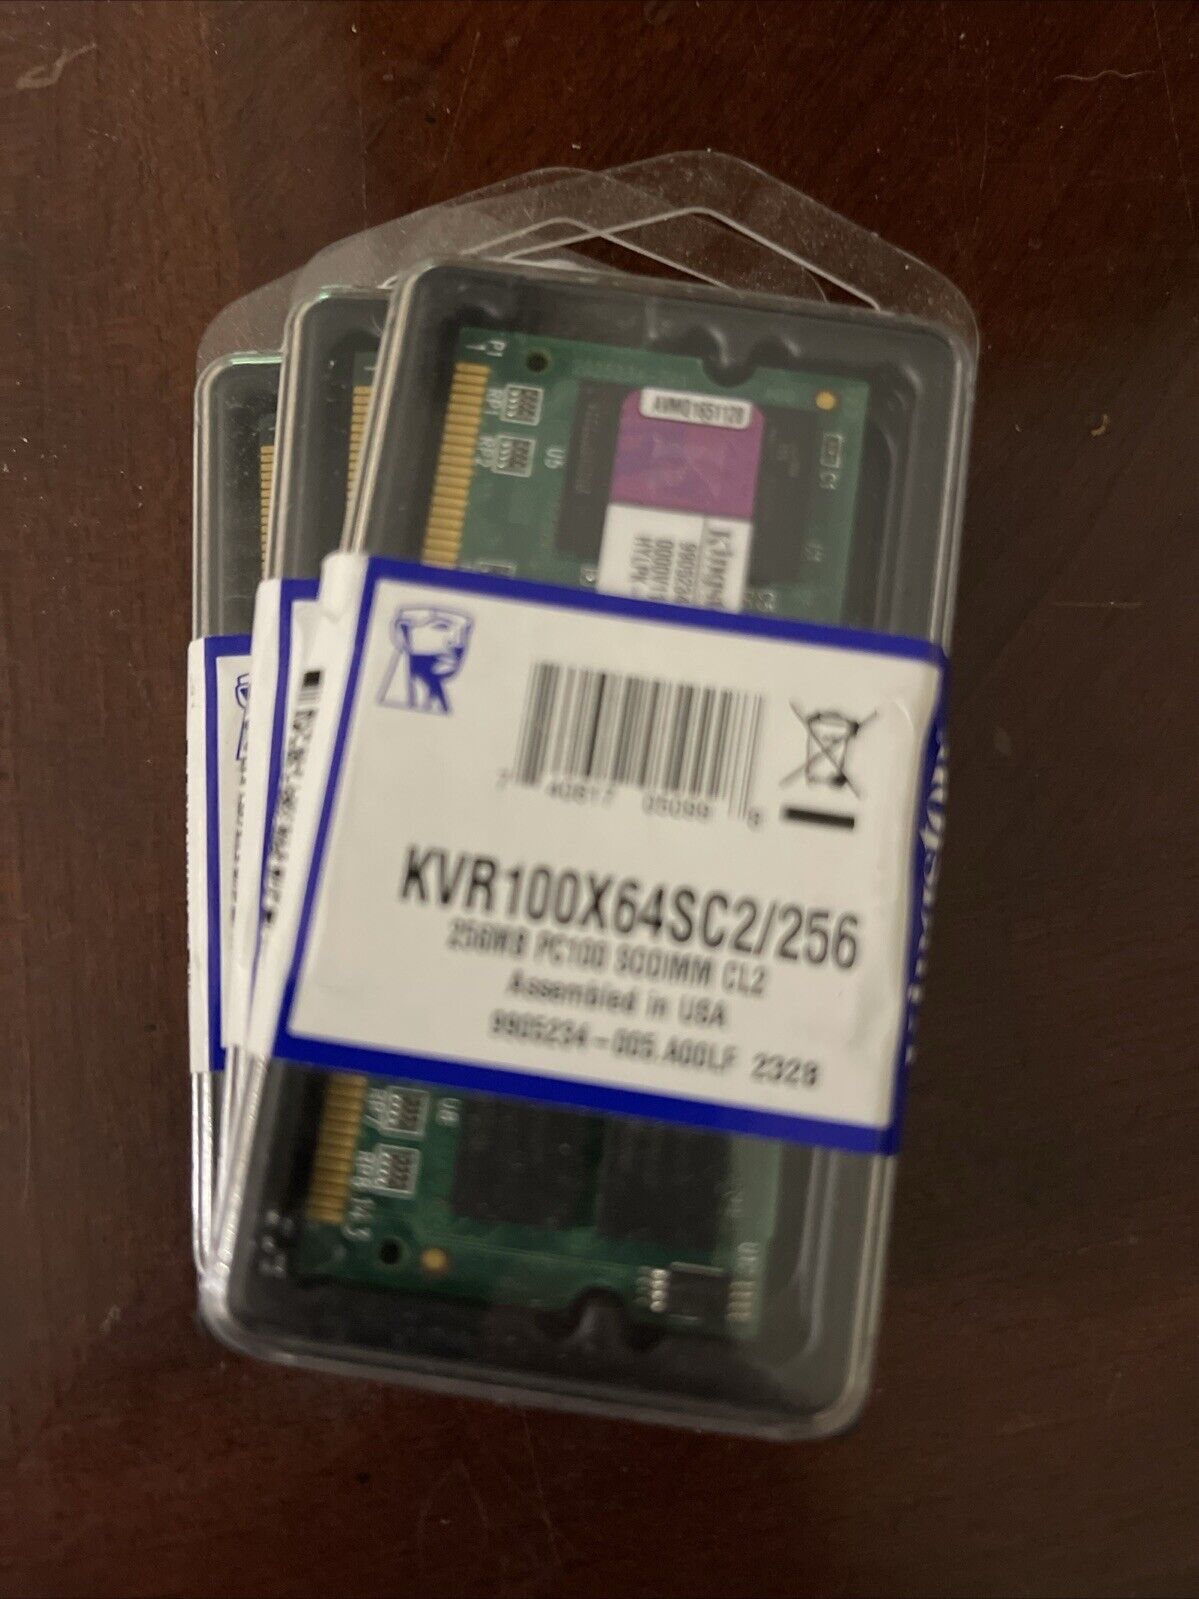 KVR100X64SC2/256 Kingston 256MB PC100 SODIMM Laptop Memory